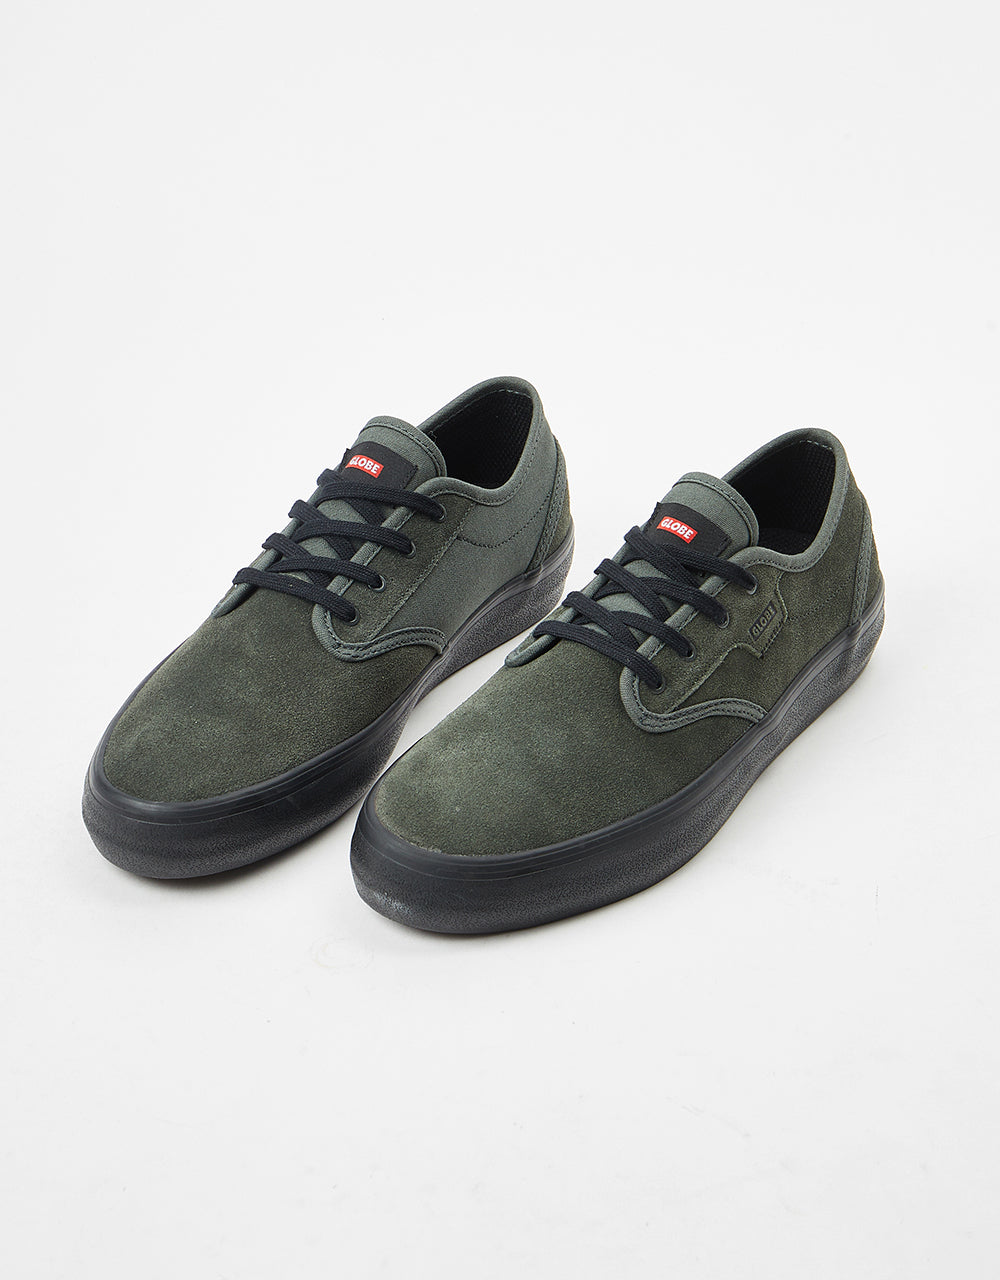 Globe Motley II Skate Shoes - Dark Olive/Black